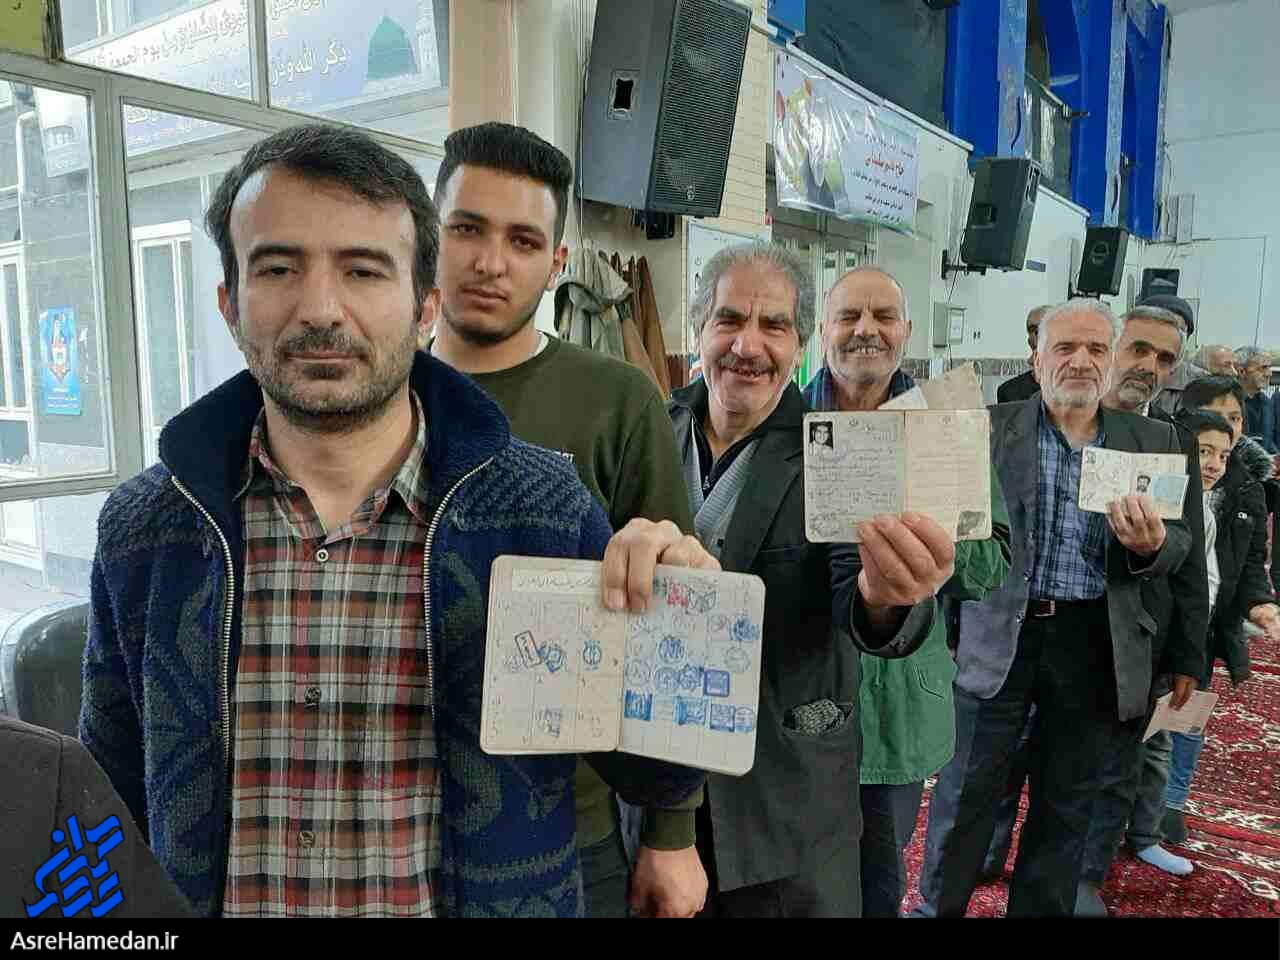 مشارکت ۴۲ درصدی مردم ایران در انتخابات مصداق آیه قرآن یعنی پیروزی ۲۰ بر ۲۰۰ است